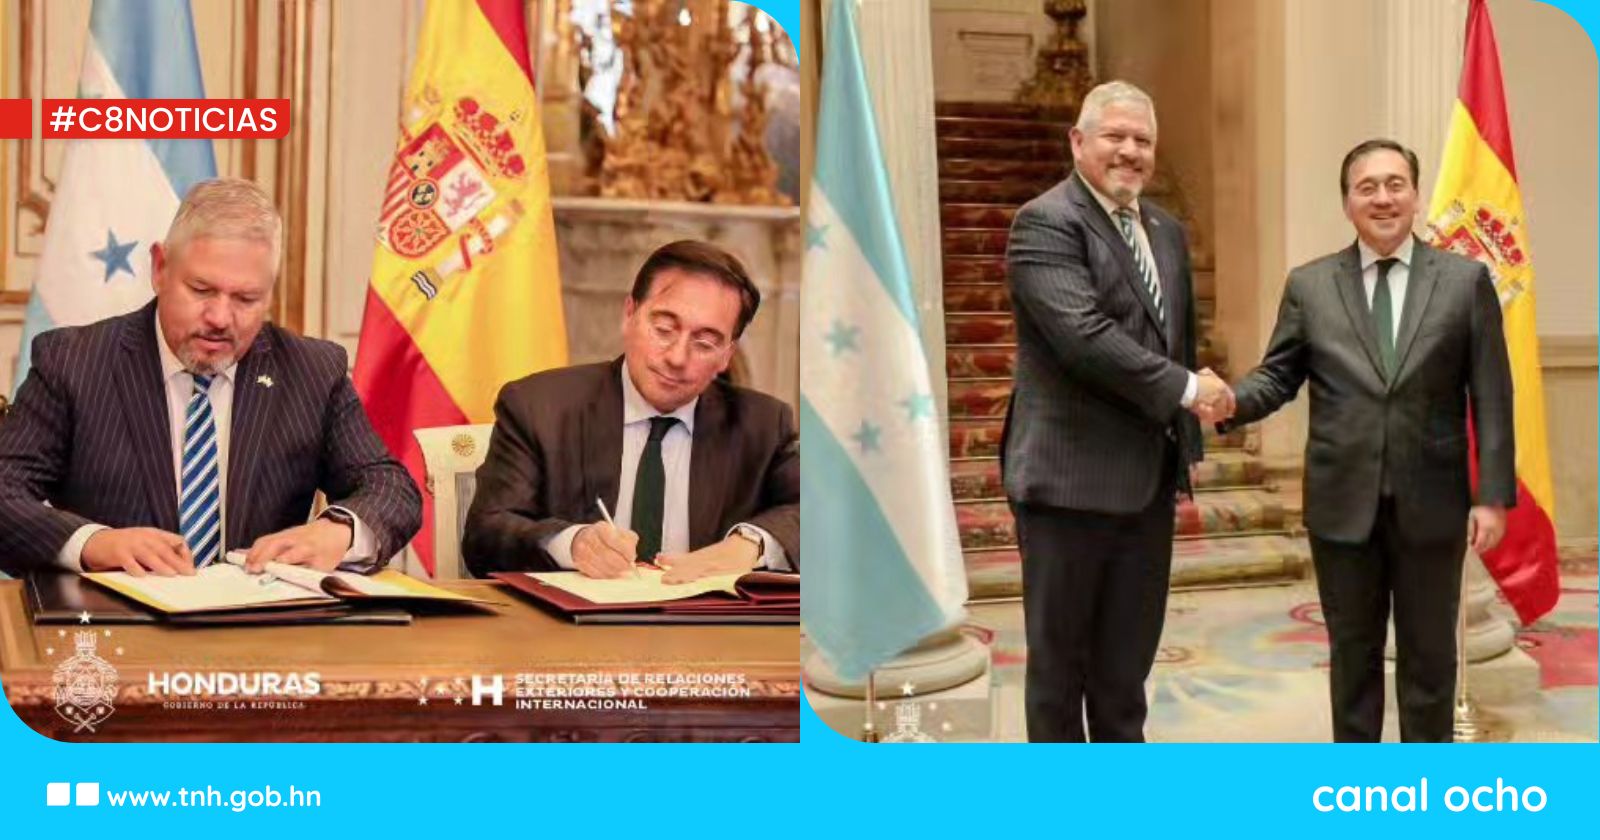 Honduras firma memorando para la promoción internacional de la lengua española